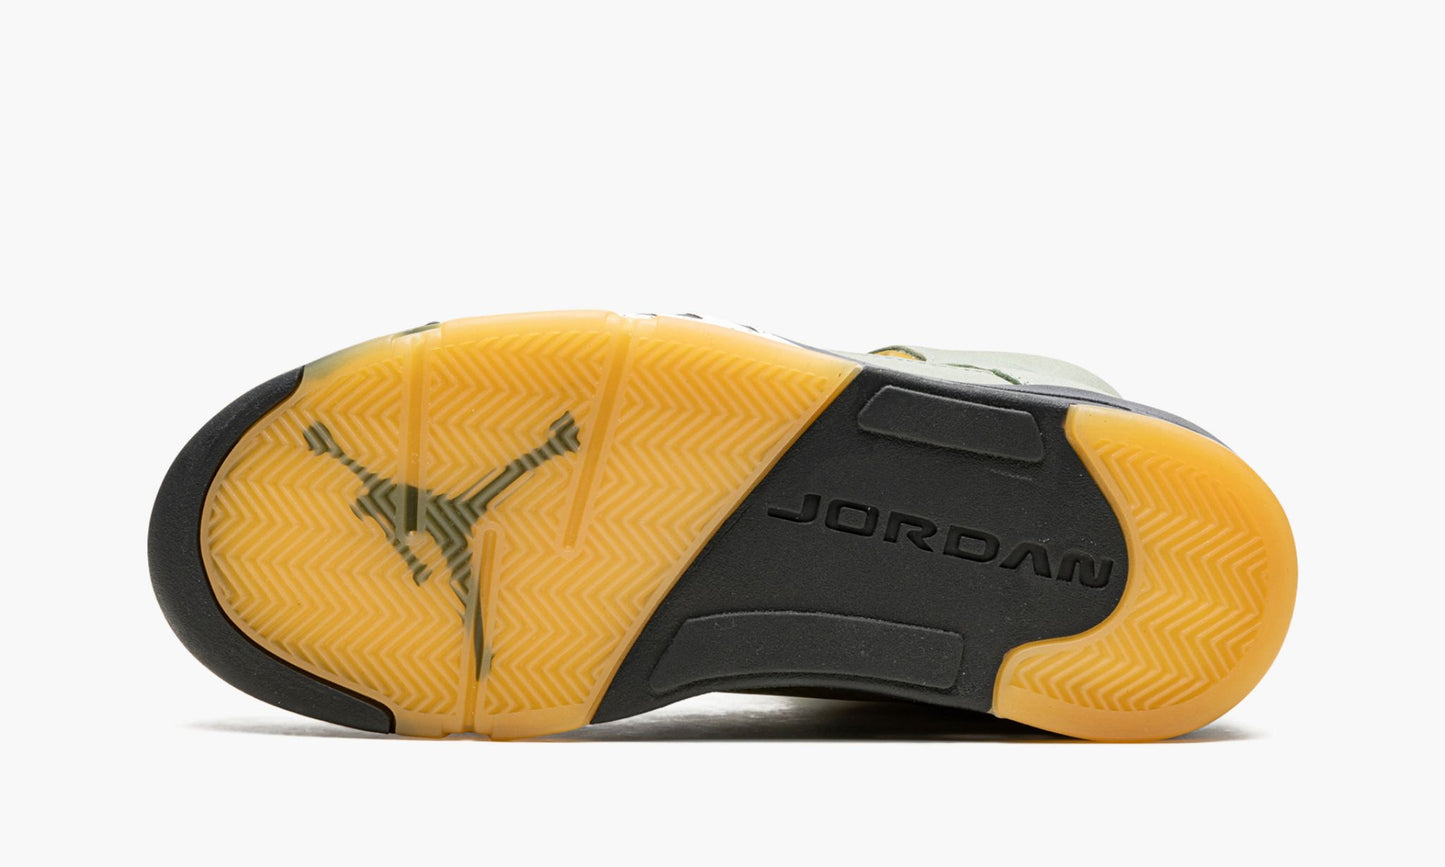 Air Jordan 5 Retro "Jade Horizon"